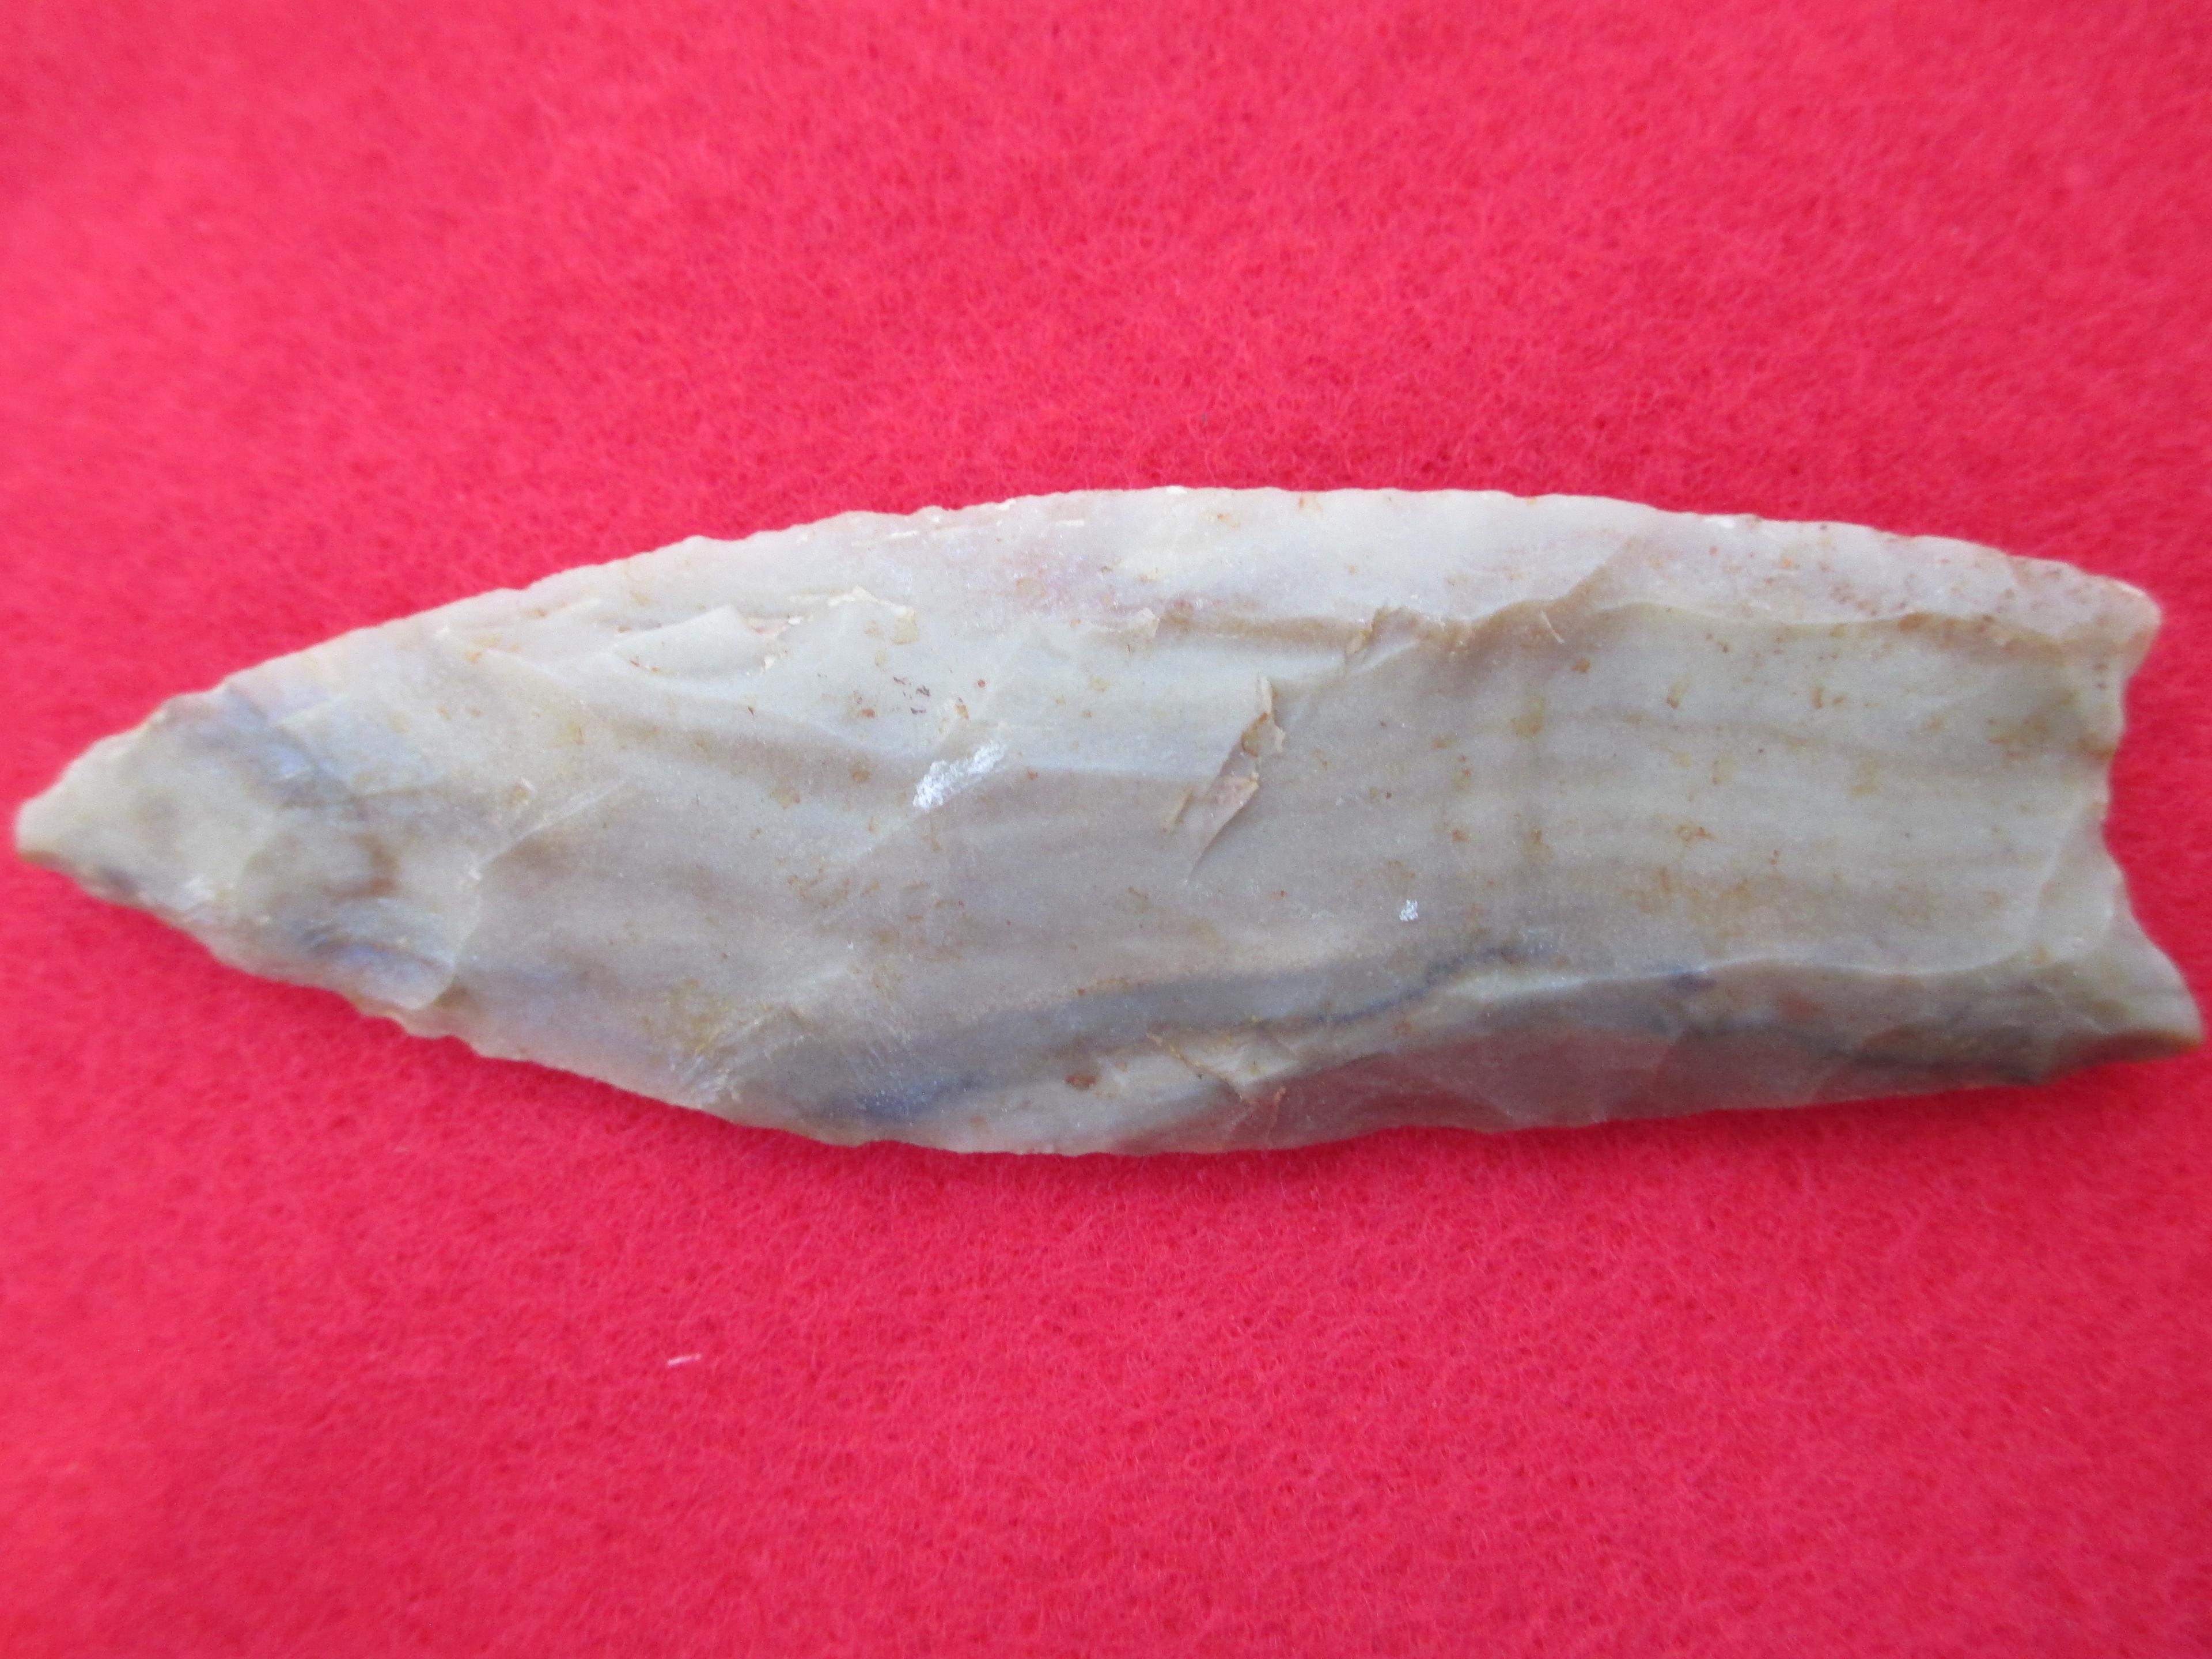 Clovis Point-Early Paleo (12,000-10,600 B.P.)